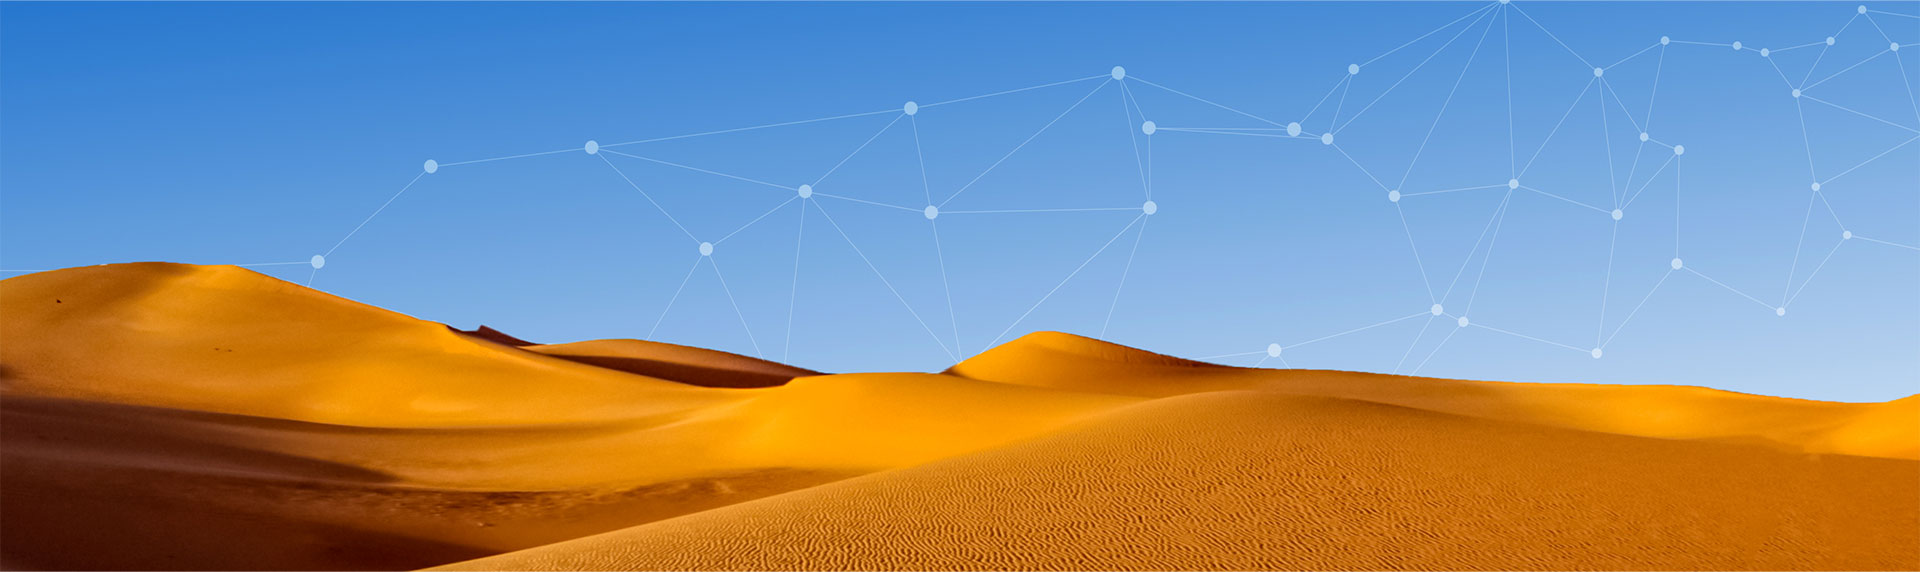 Wüste, Verbindungs-Netzwerk im Himmel